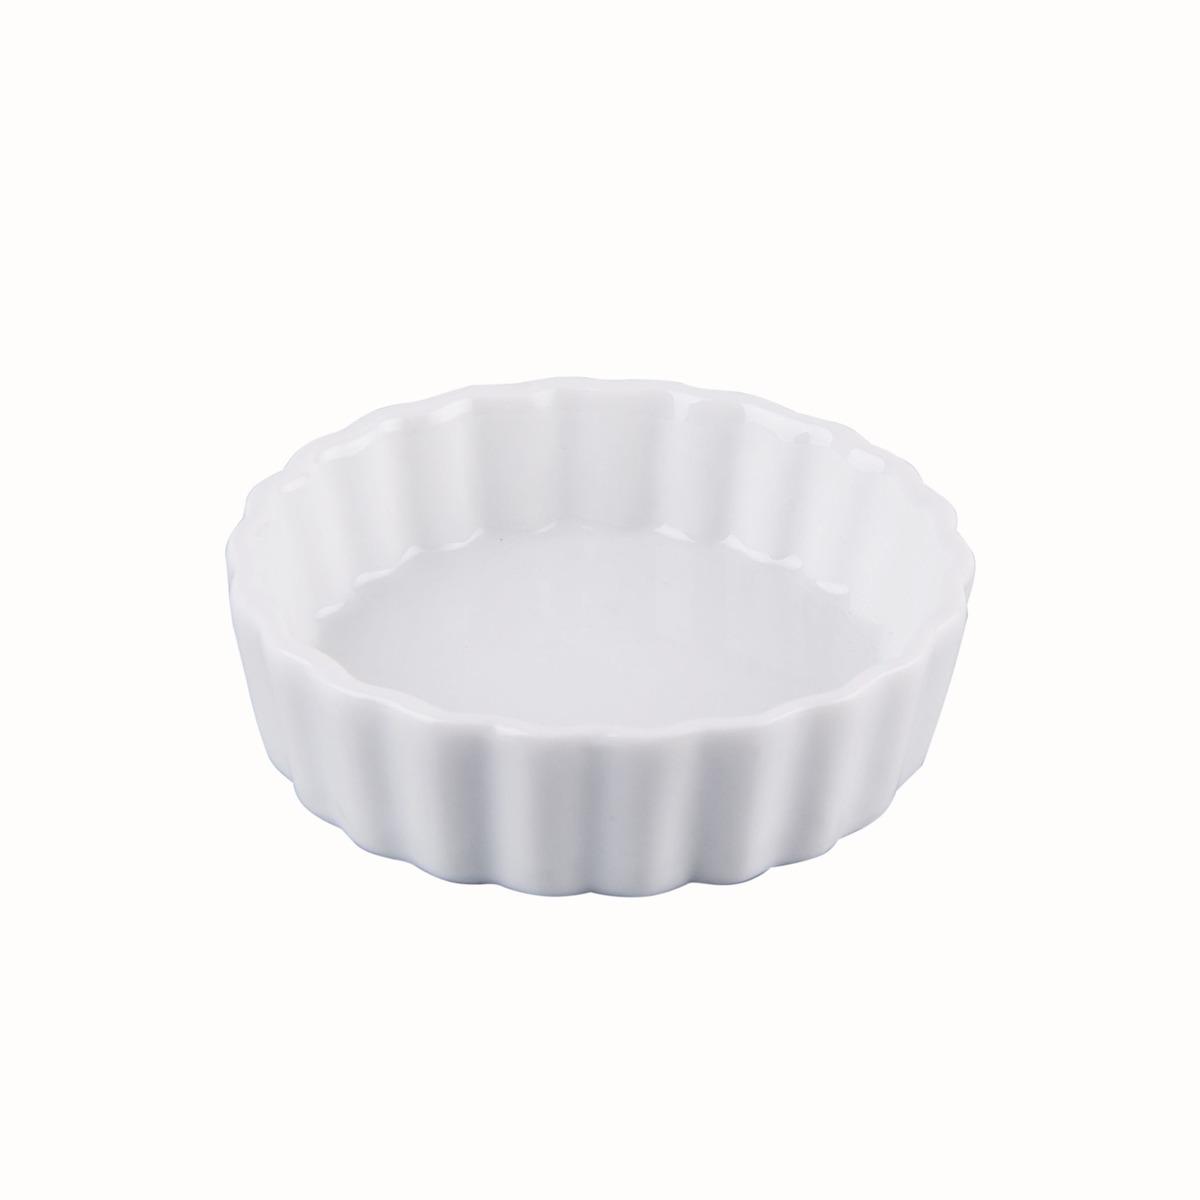 Moule à tartelette en porcelaine - Diamètre 10,5 cm - Blanc